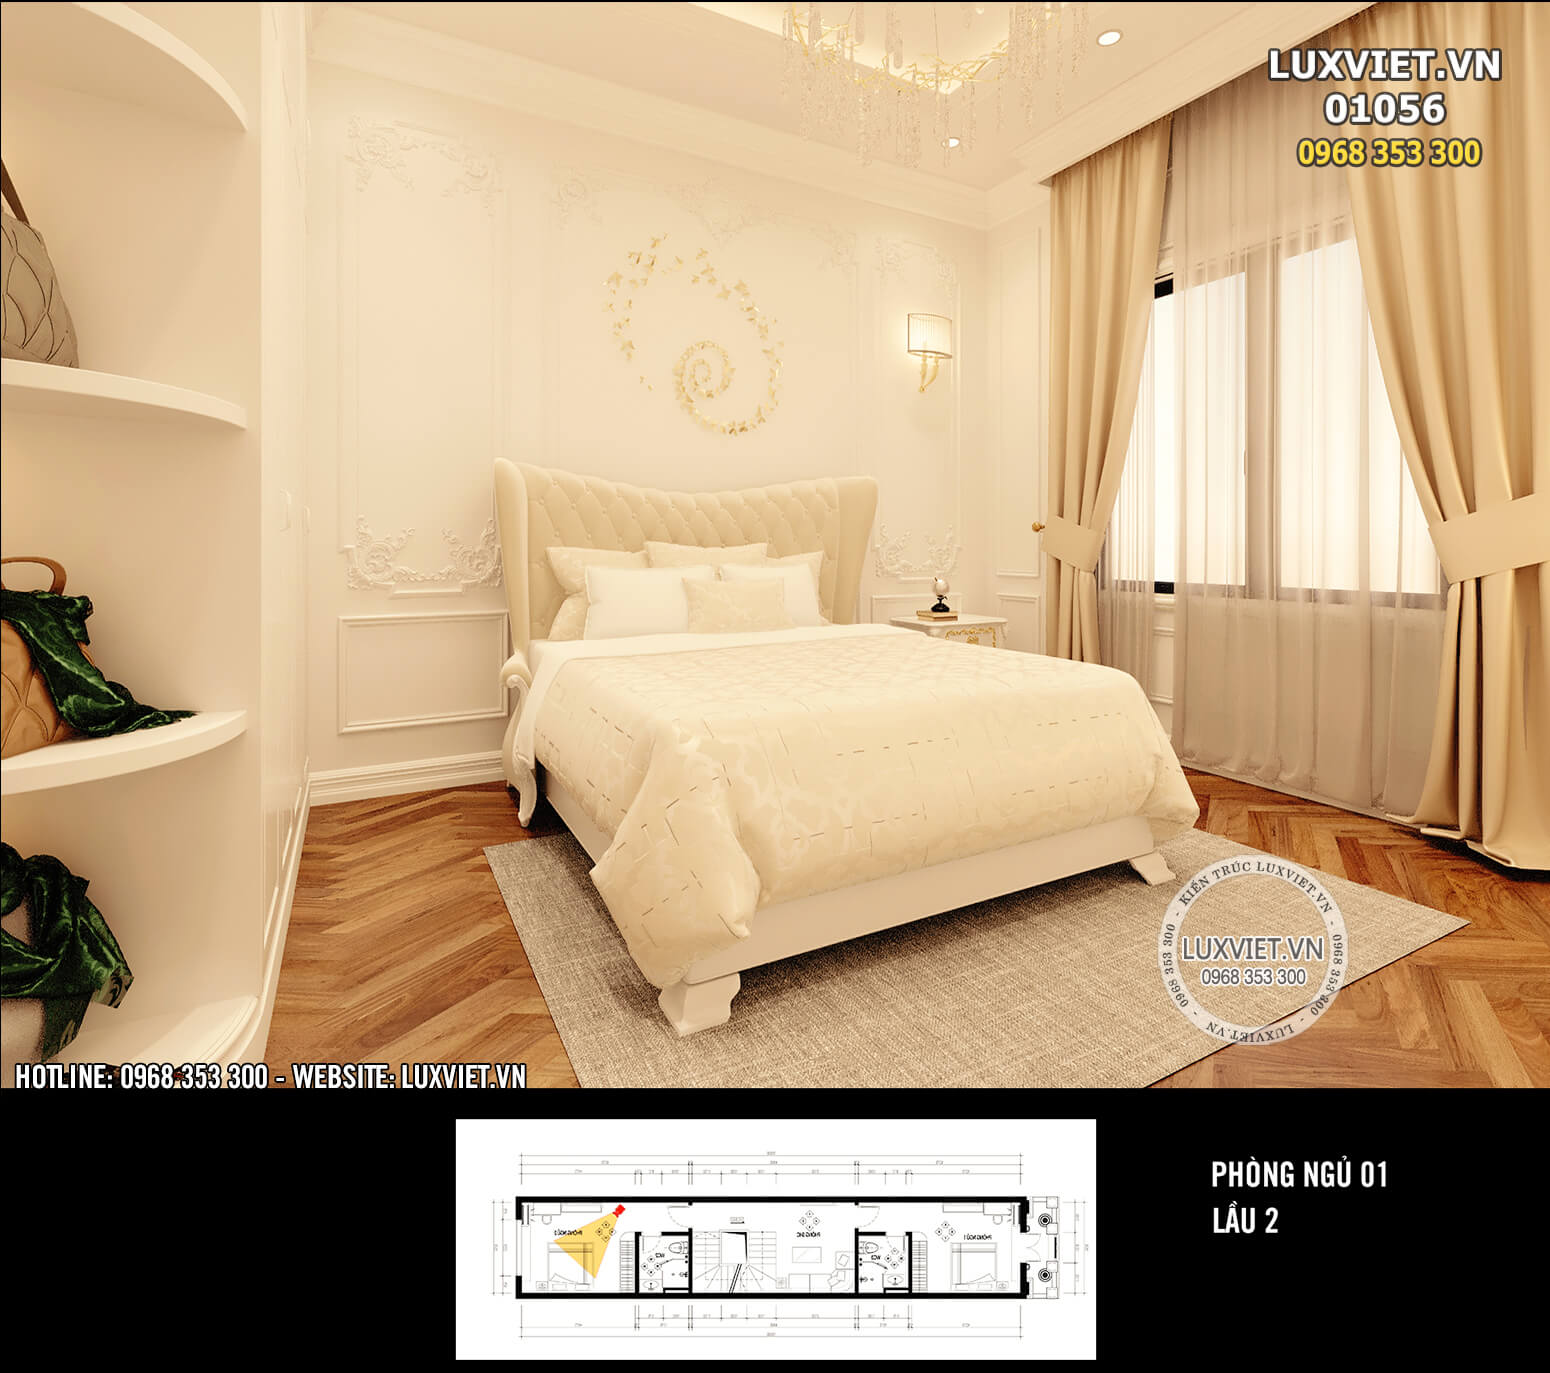 Hình ảnh: Thiết kế phòng ngủ tân cổ điển nhà ống - LV 01056